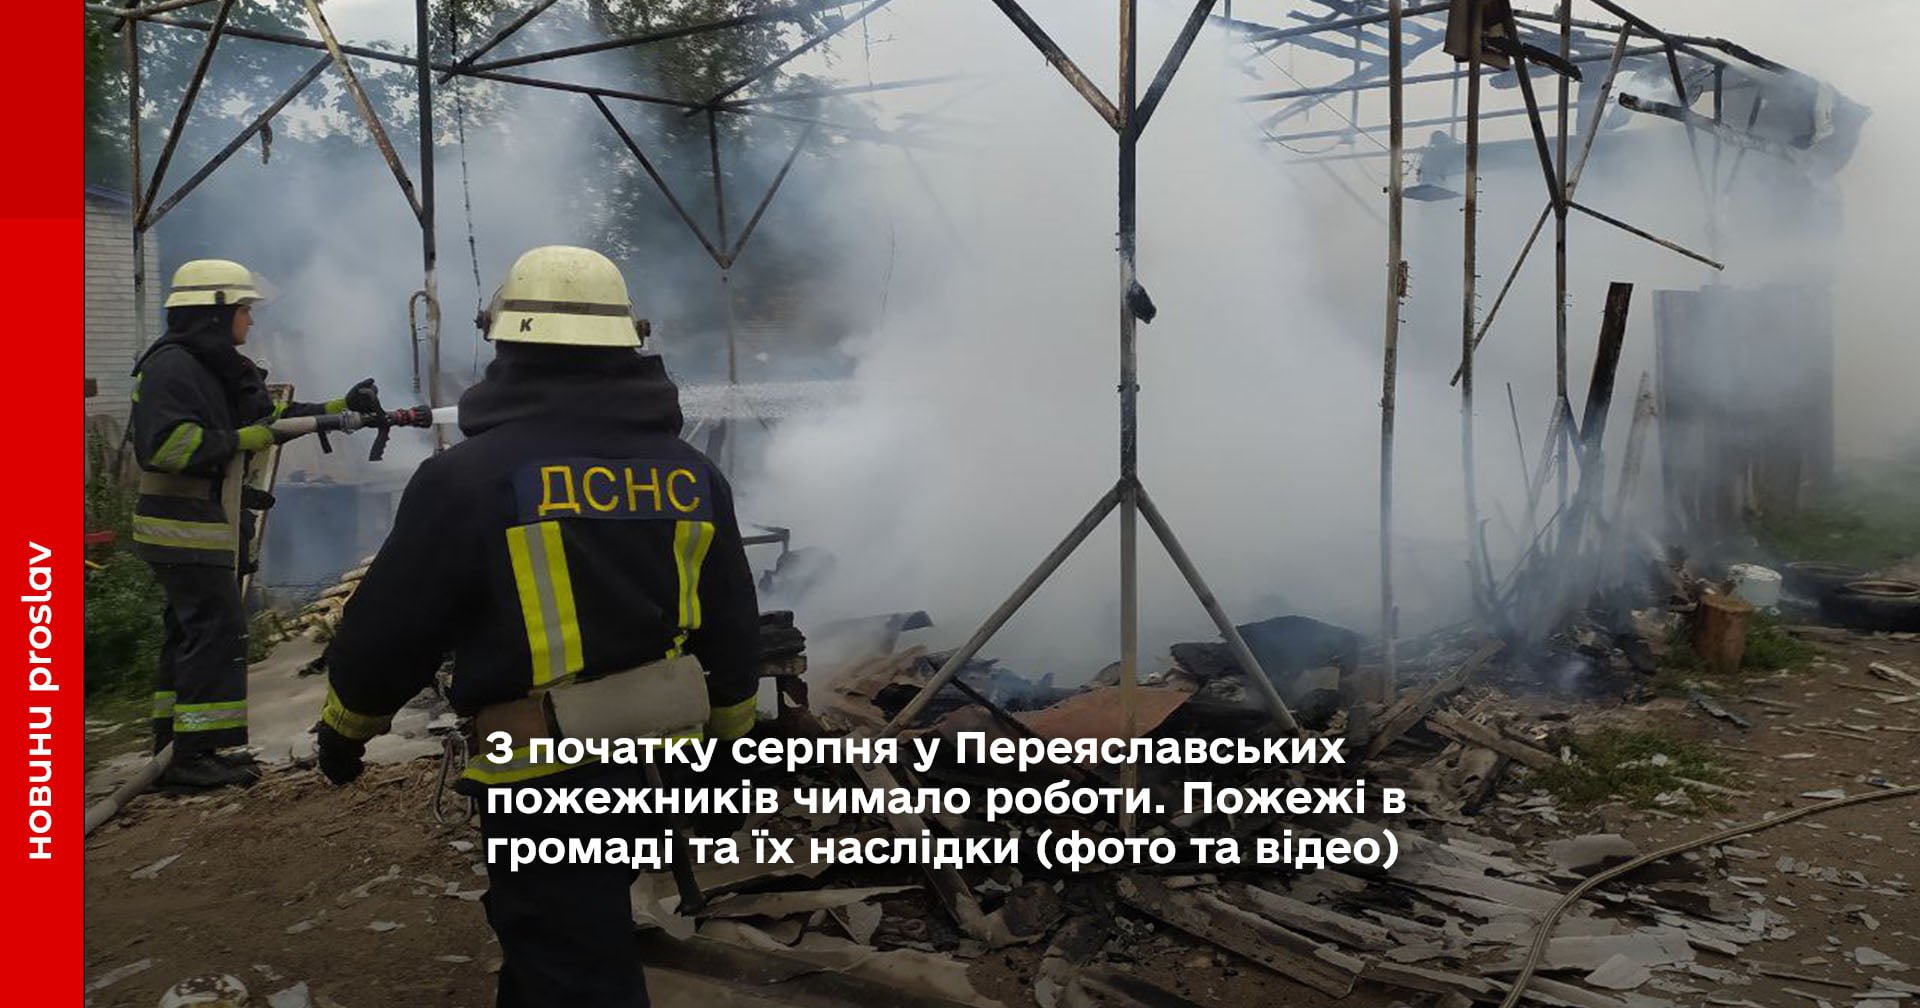 З початку серпня у Переяславських пожежників чимало роботи. Пожежі в громаді та їх наслідки (фото та відео)